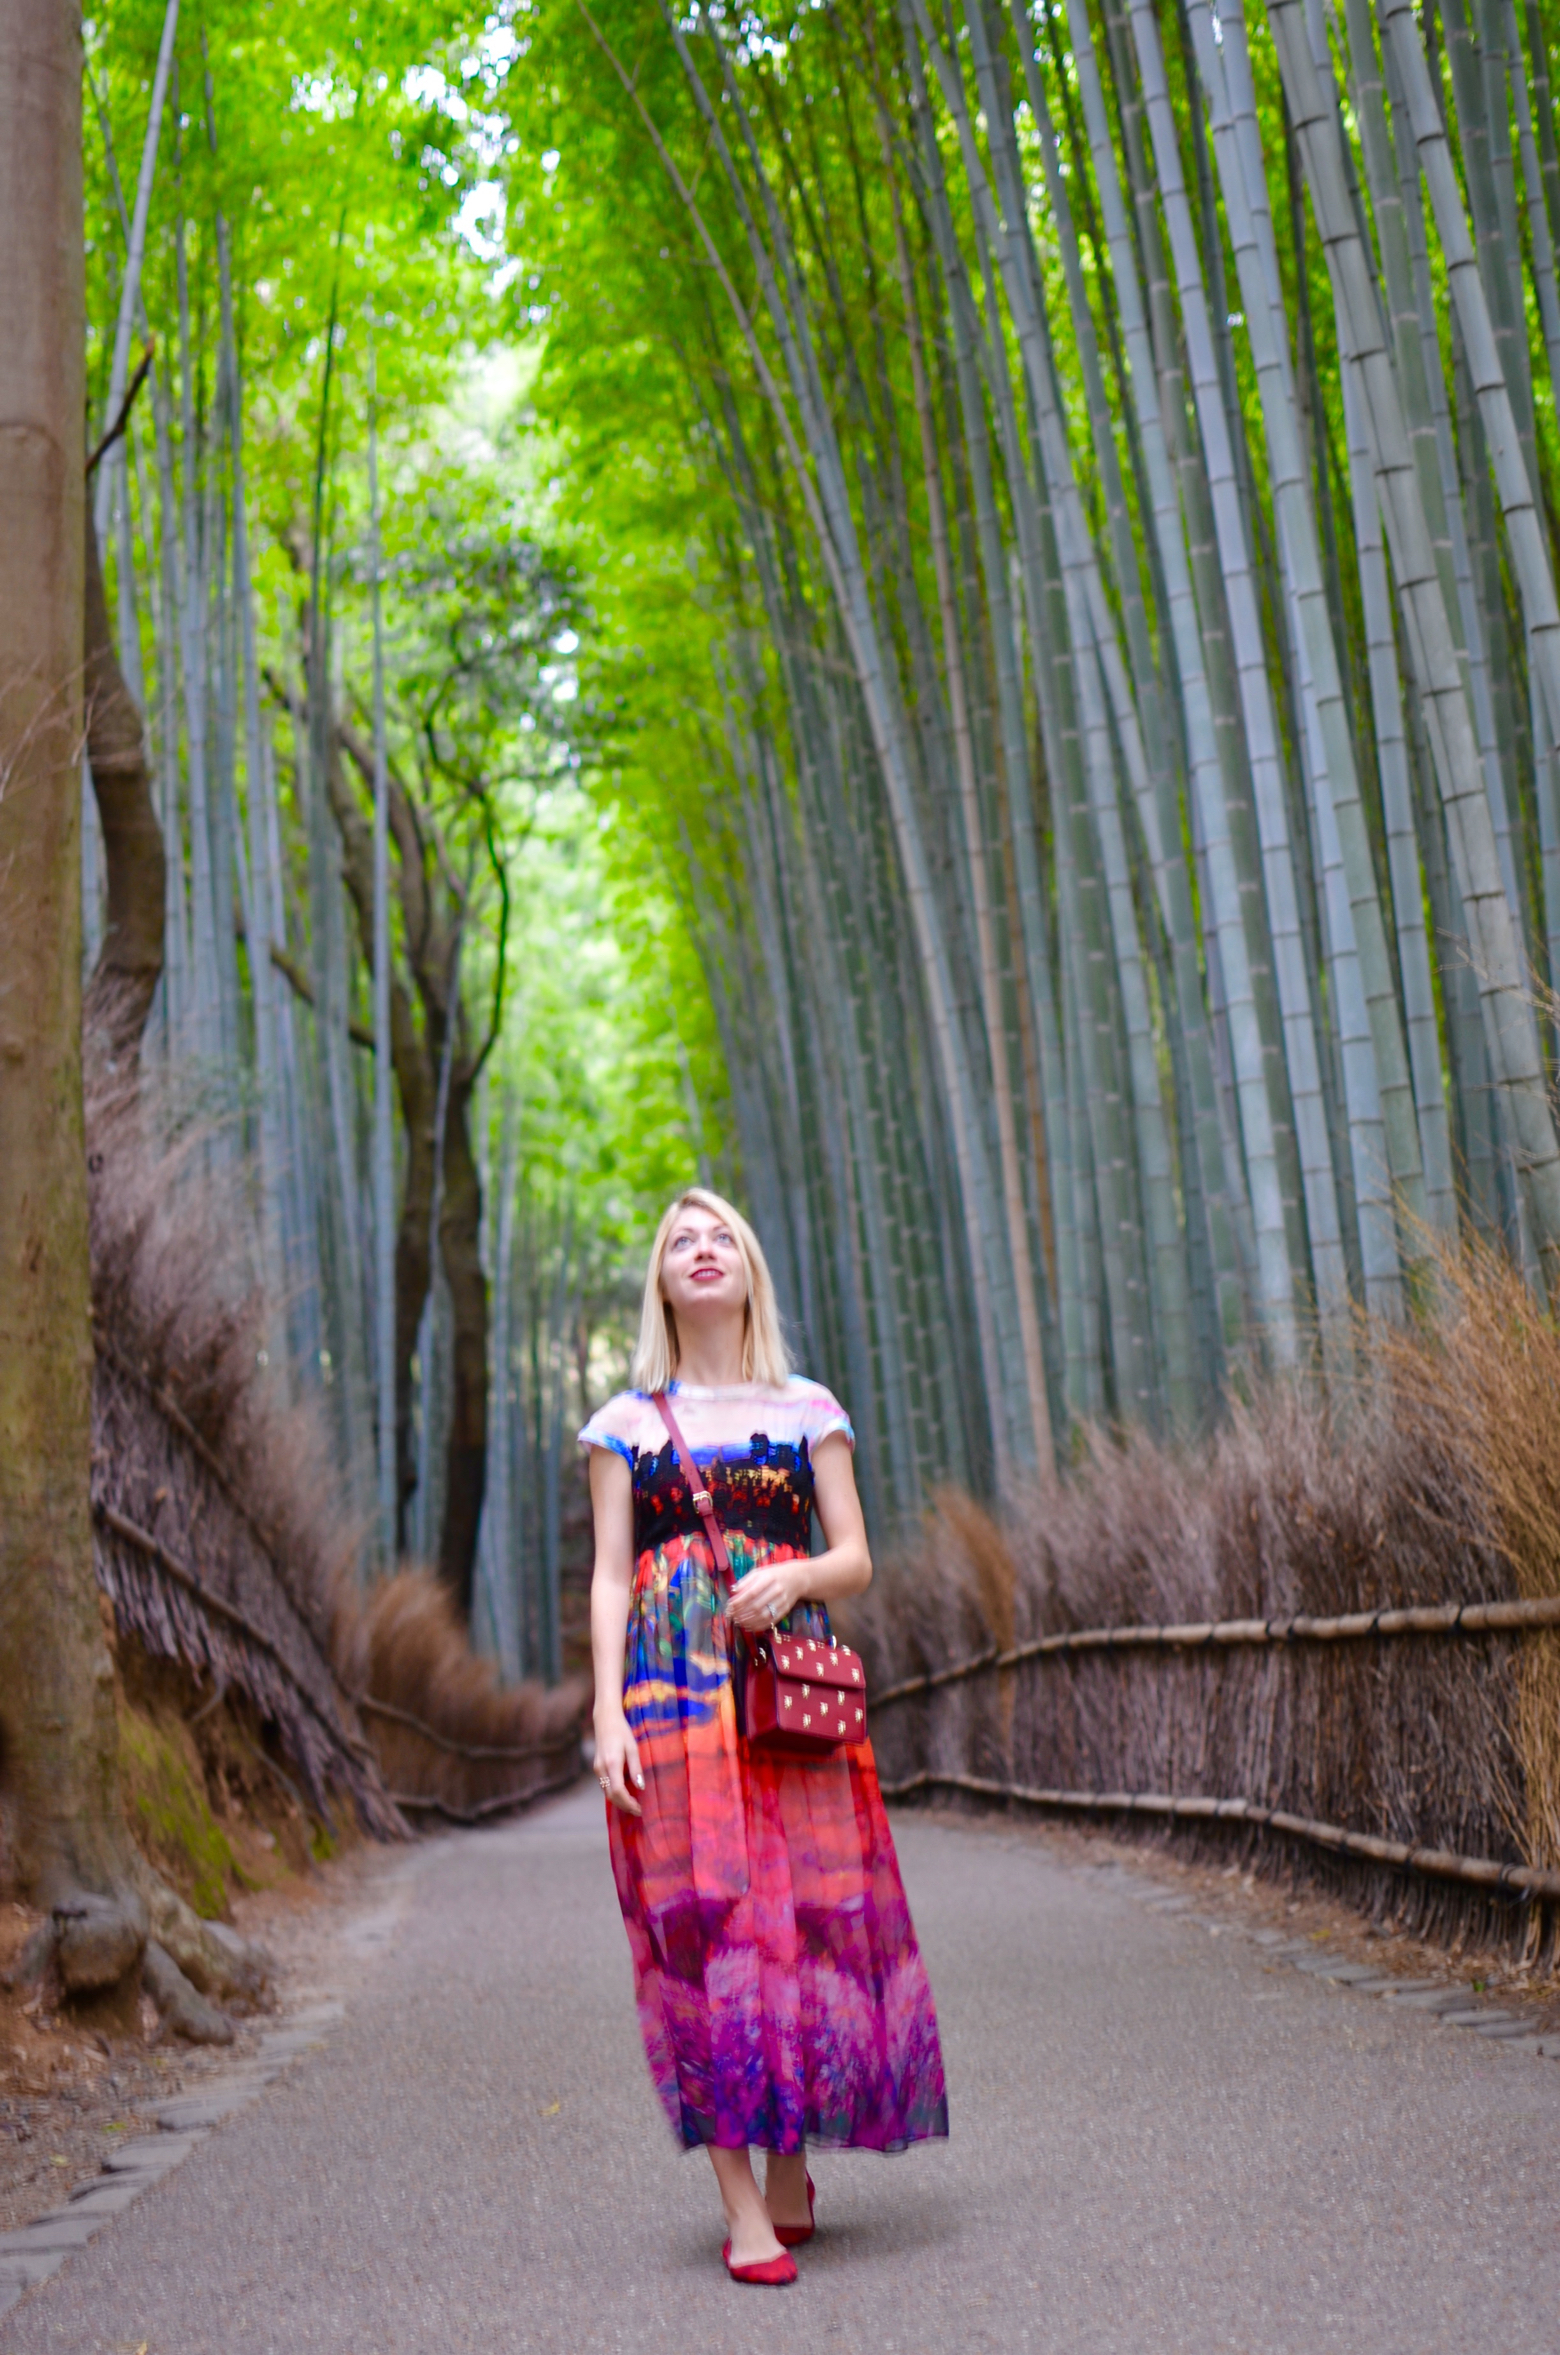 Traveling Kyoto and Arashiyama, Bamboo Forest